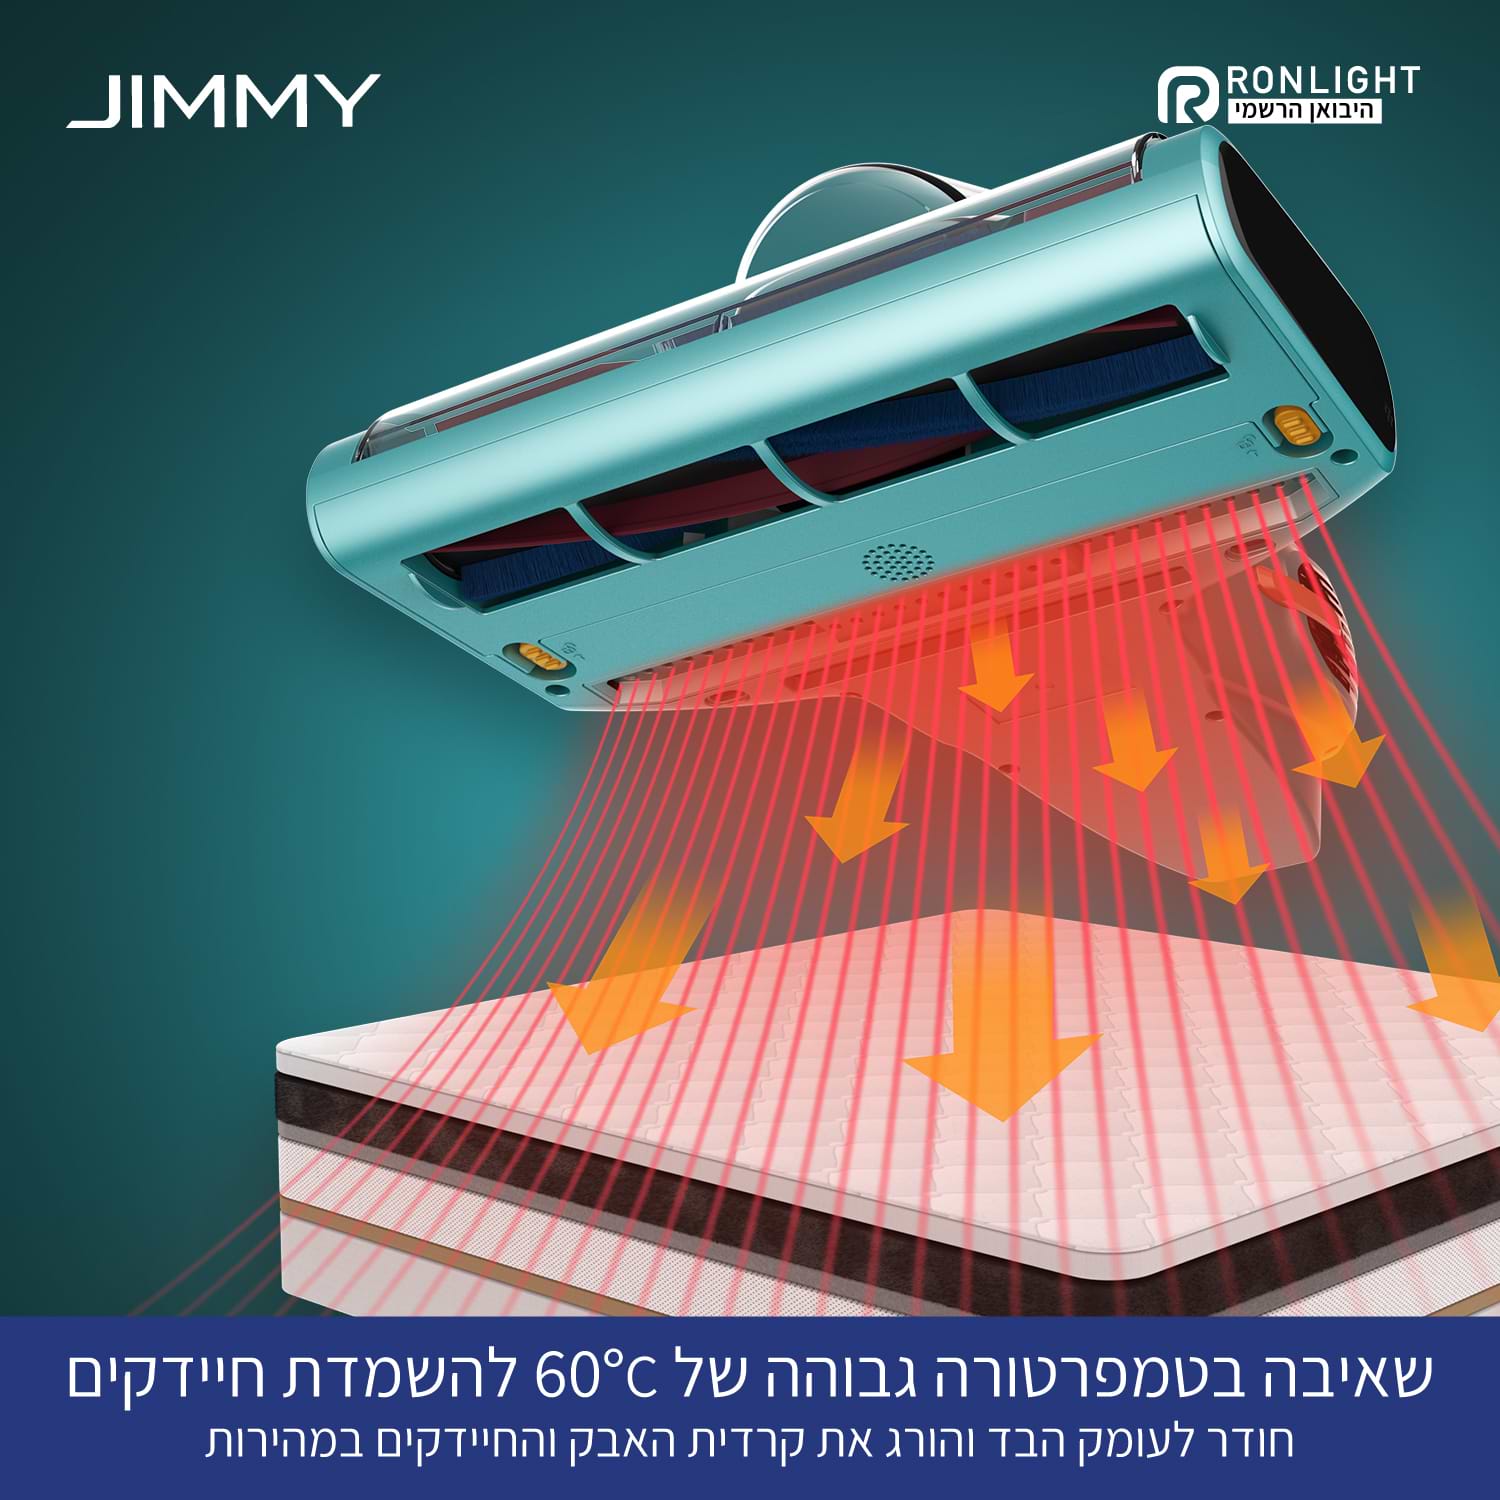 שואב אבק ידני אנטי אלרגני מקצועי לספות  Jimmy BX7 Pro - צבע כחול שנה אחריות ע"י היבואן הרשמי